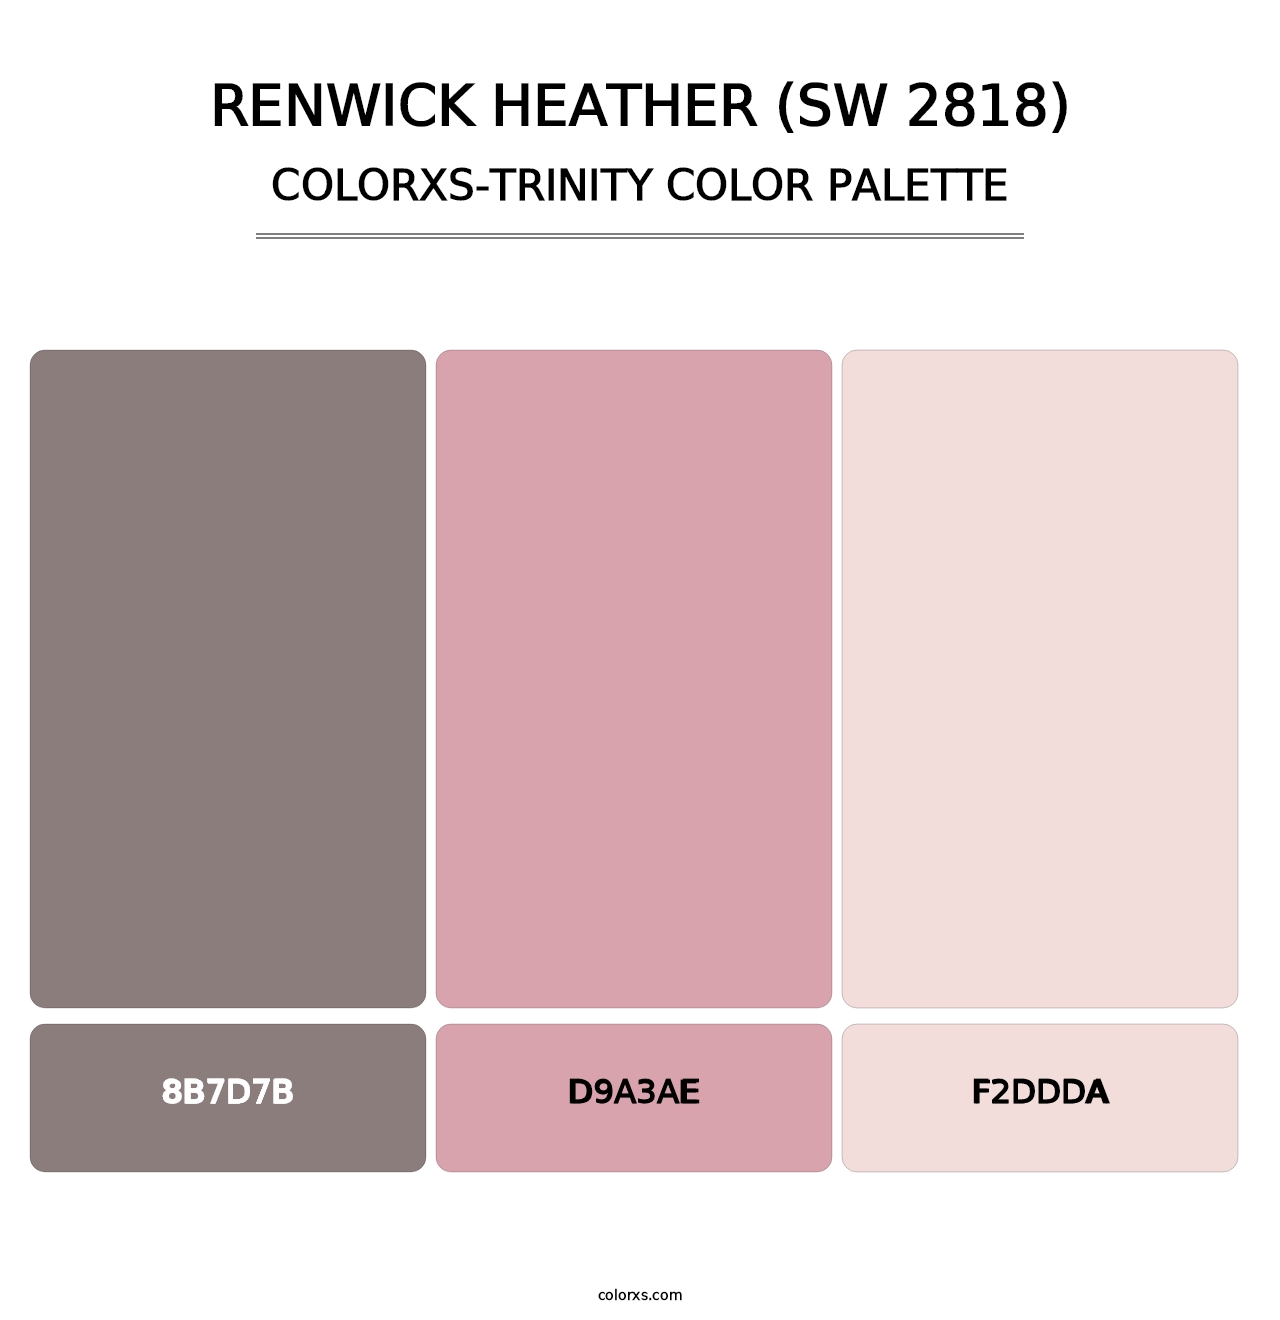 Renwick Heather (SW 2818) - Colorxs Trinity Palette